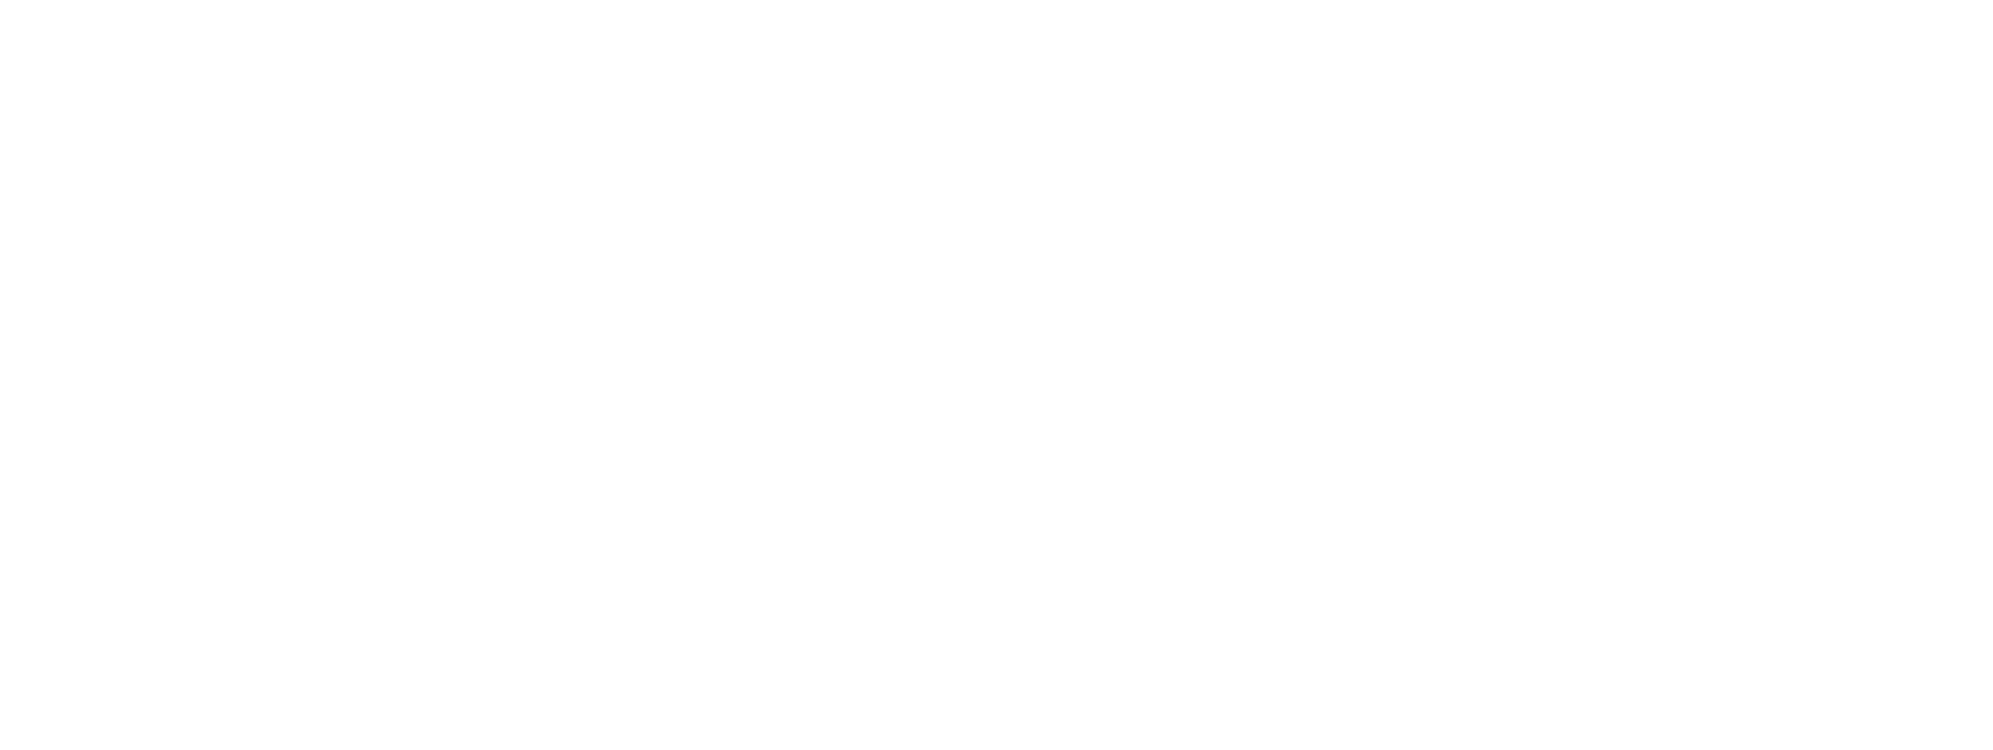 Distillery - Bushmills Irish Whiskey